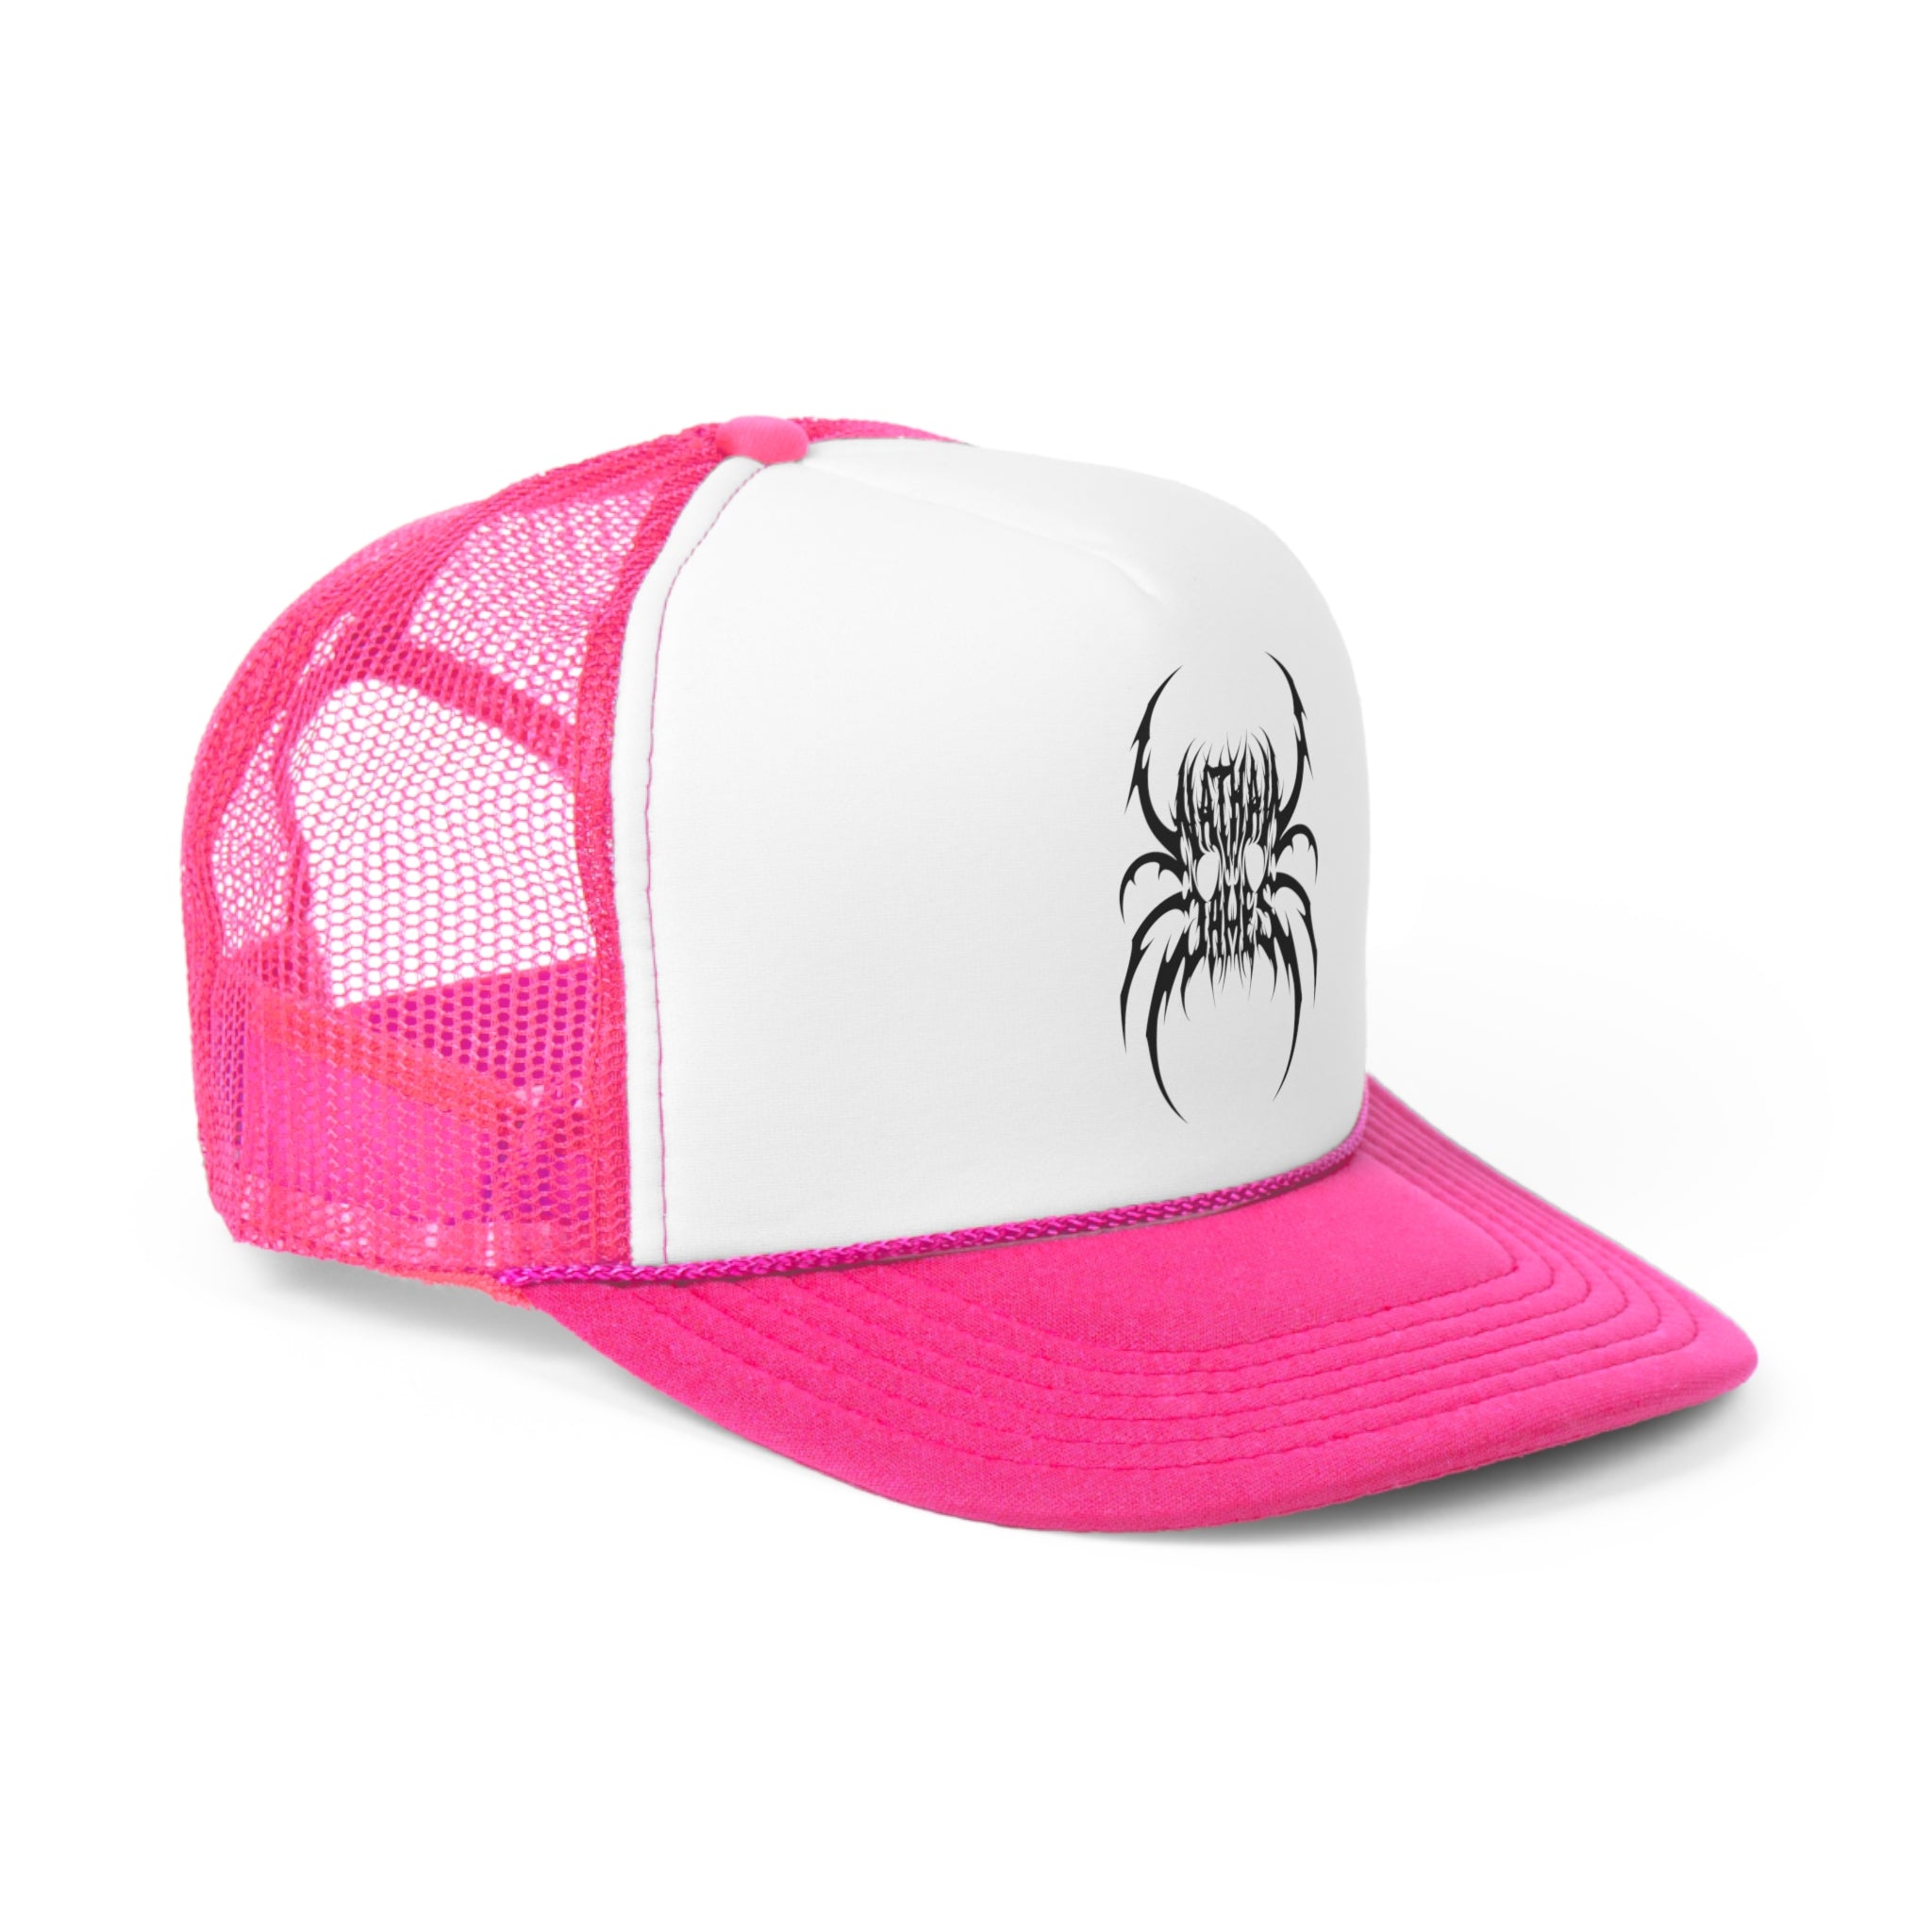 Spider-Skull Trucker Hat v2